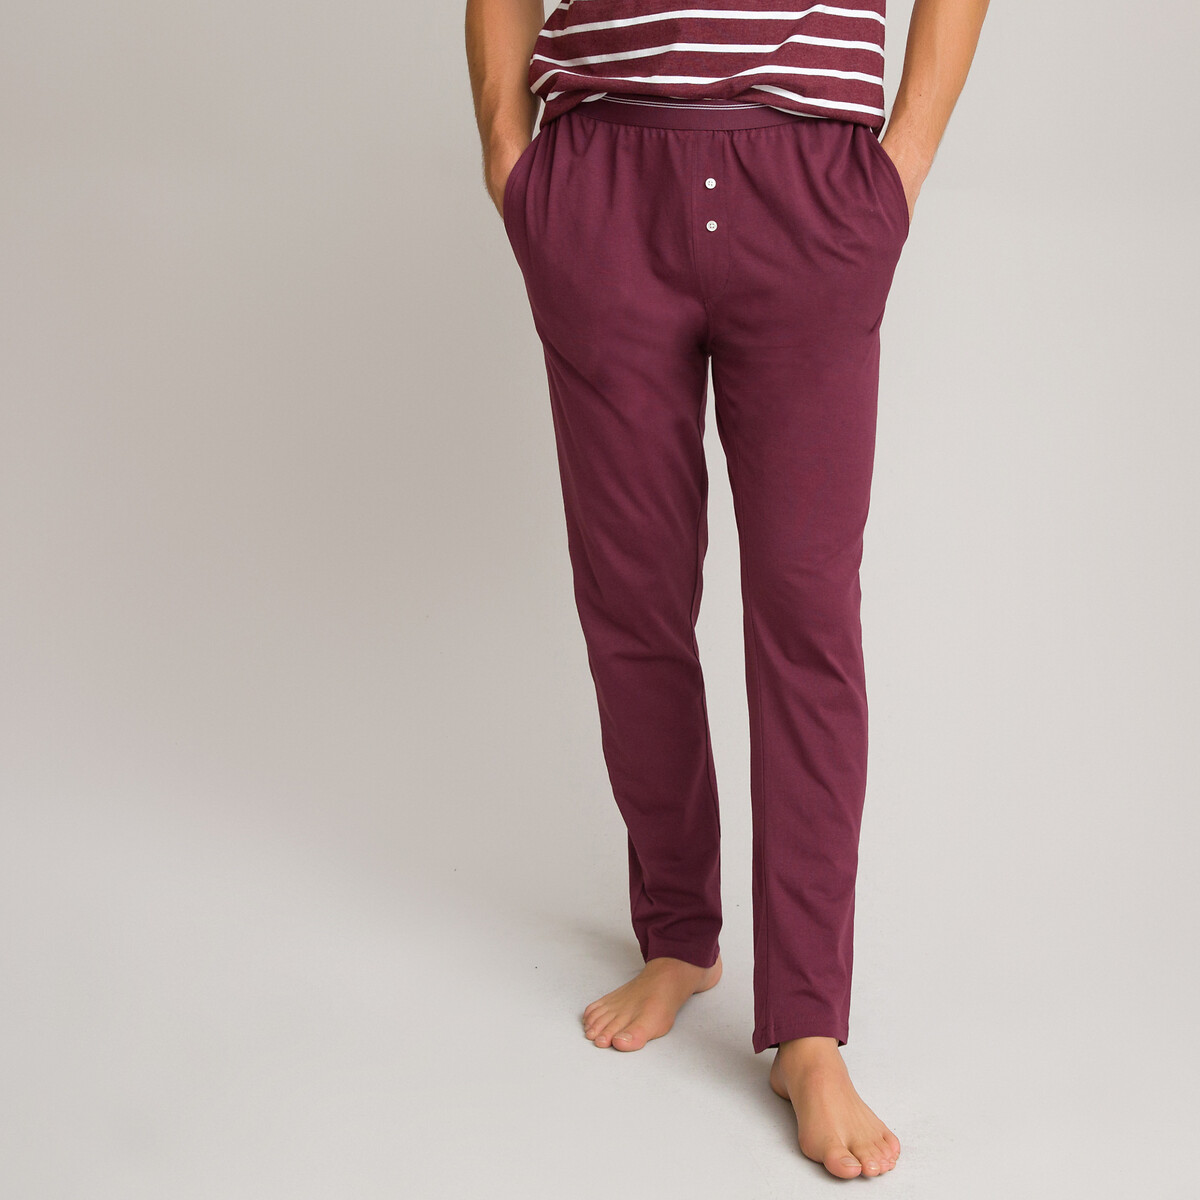 Пижама LaRedoute С короткими рукавами из биохлопка XL красный, размер XL - фото 3